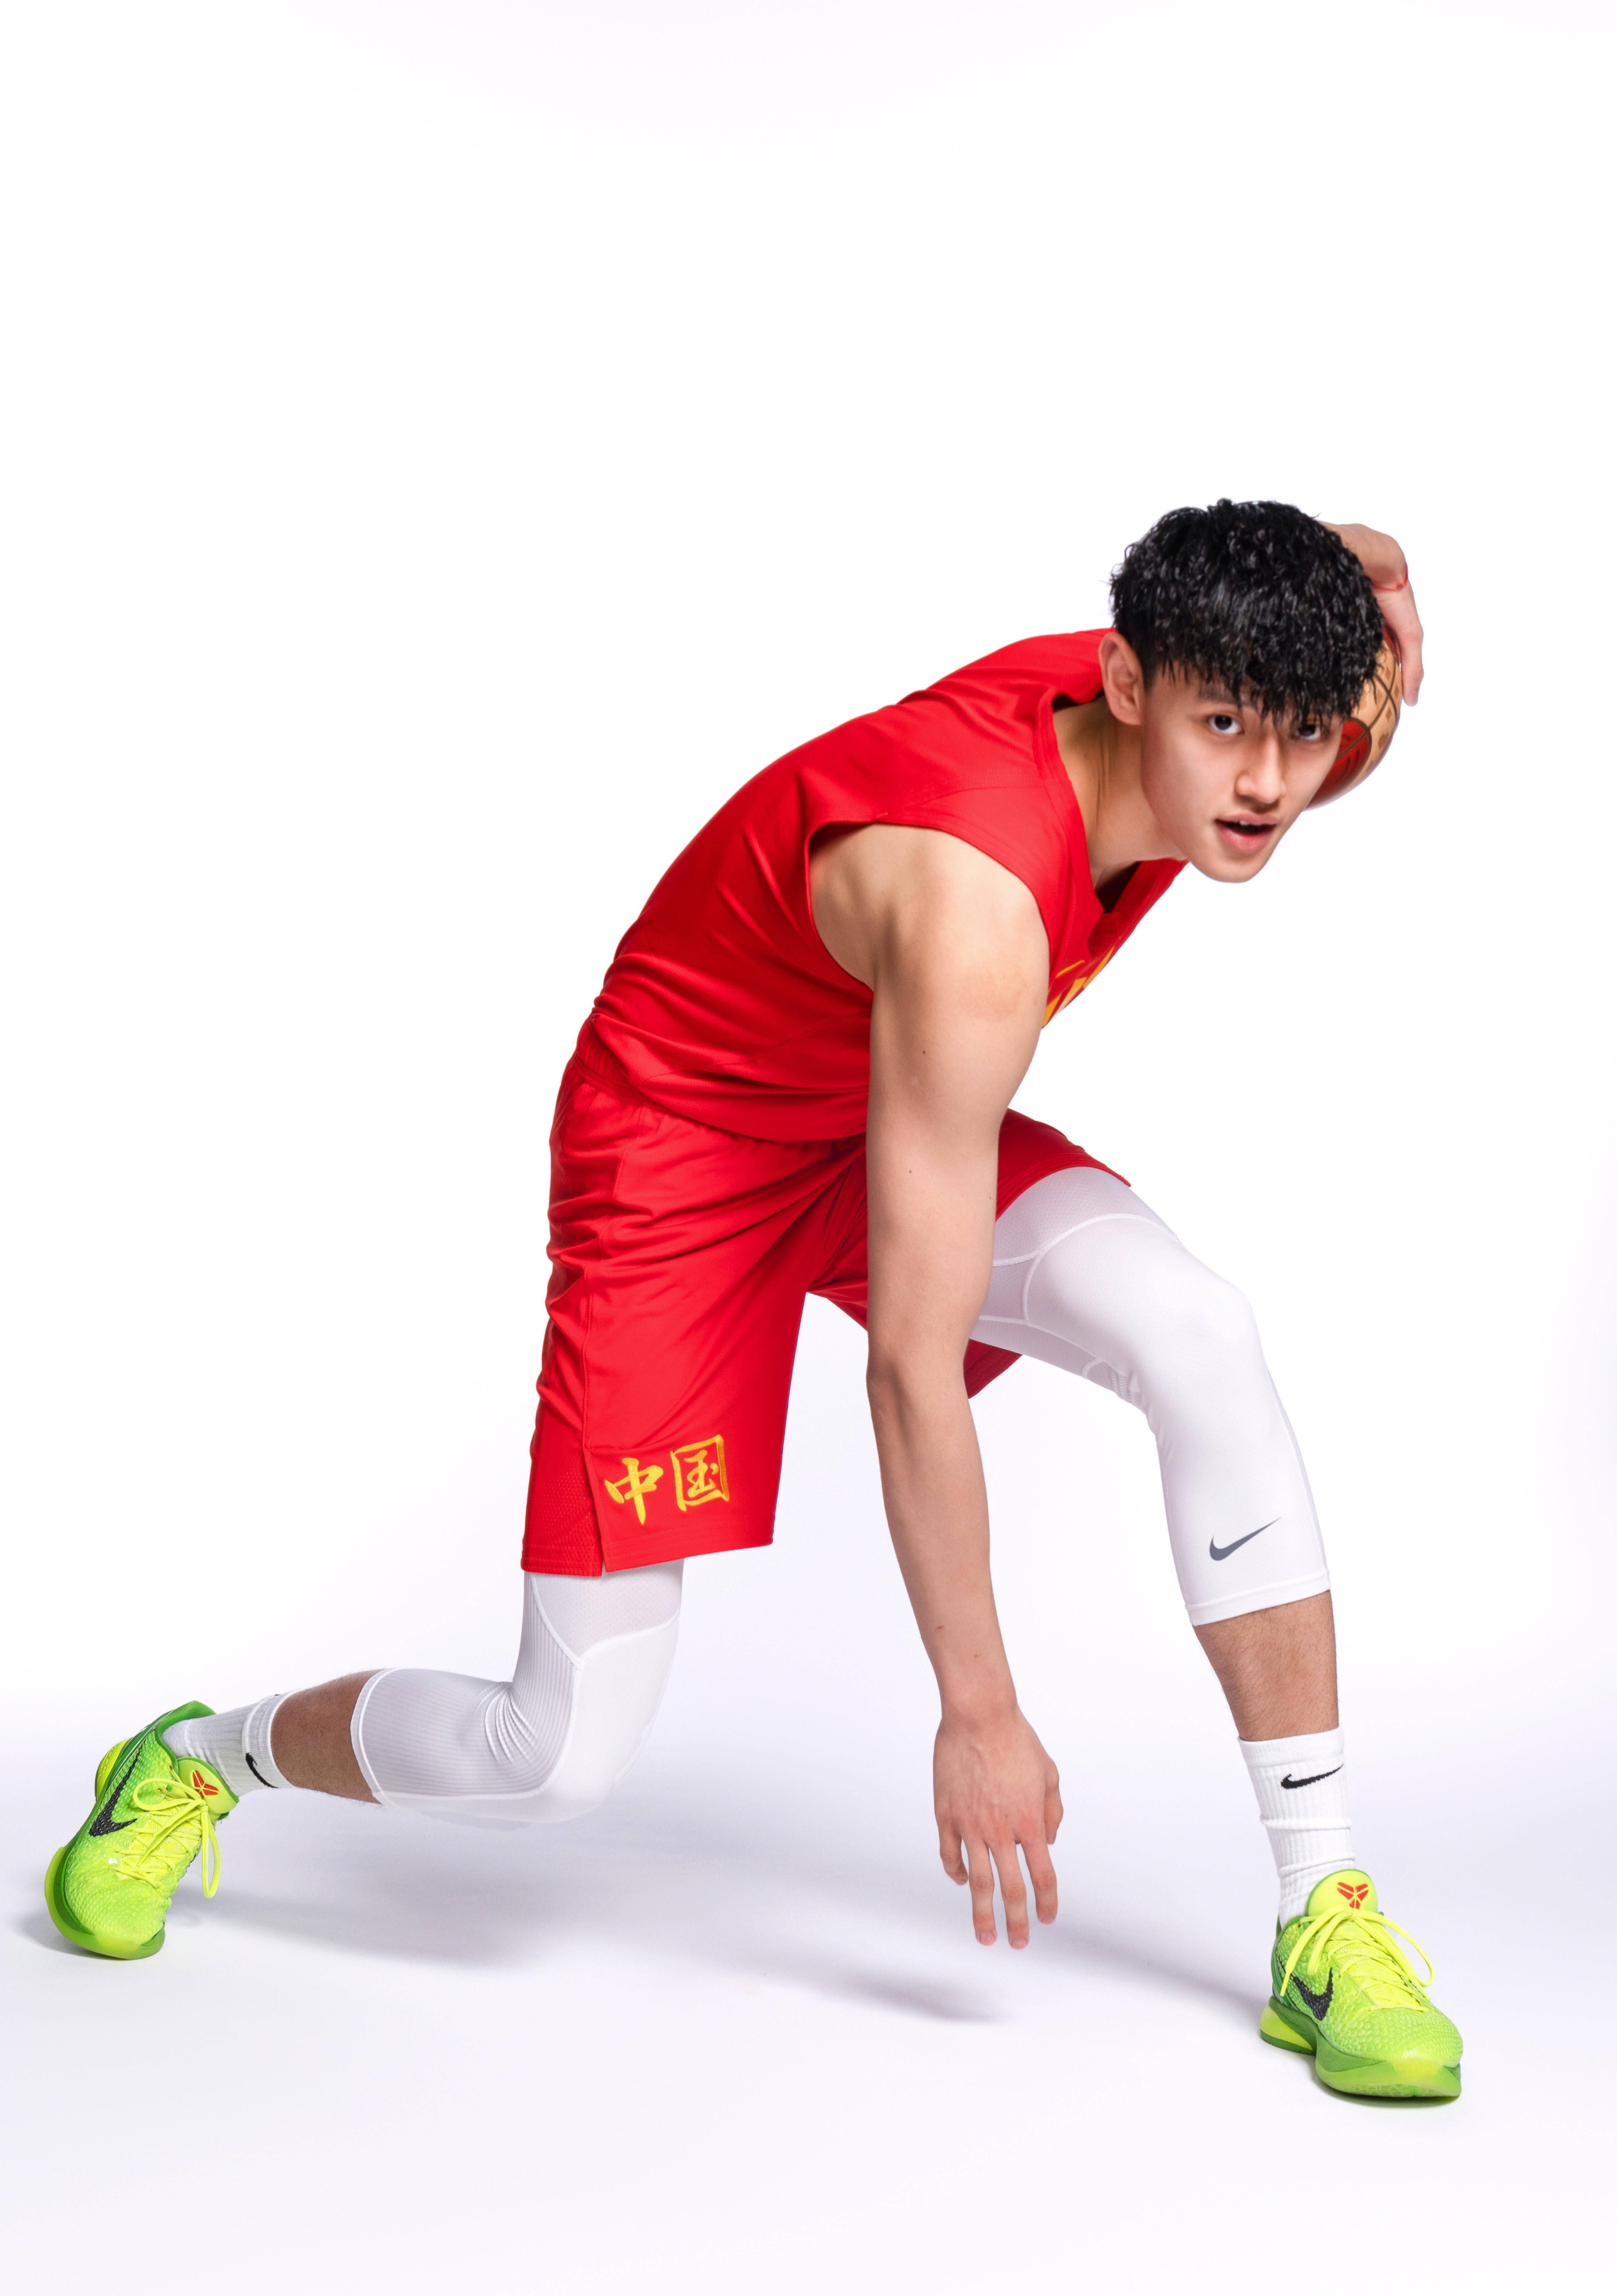 中国篮球潜力新星第四期:中国杜兰特曾凡博